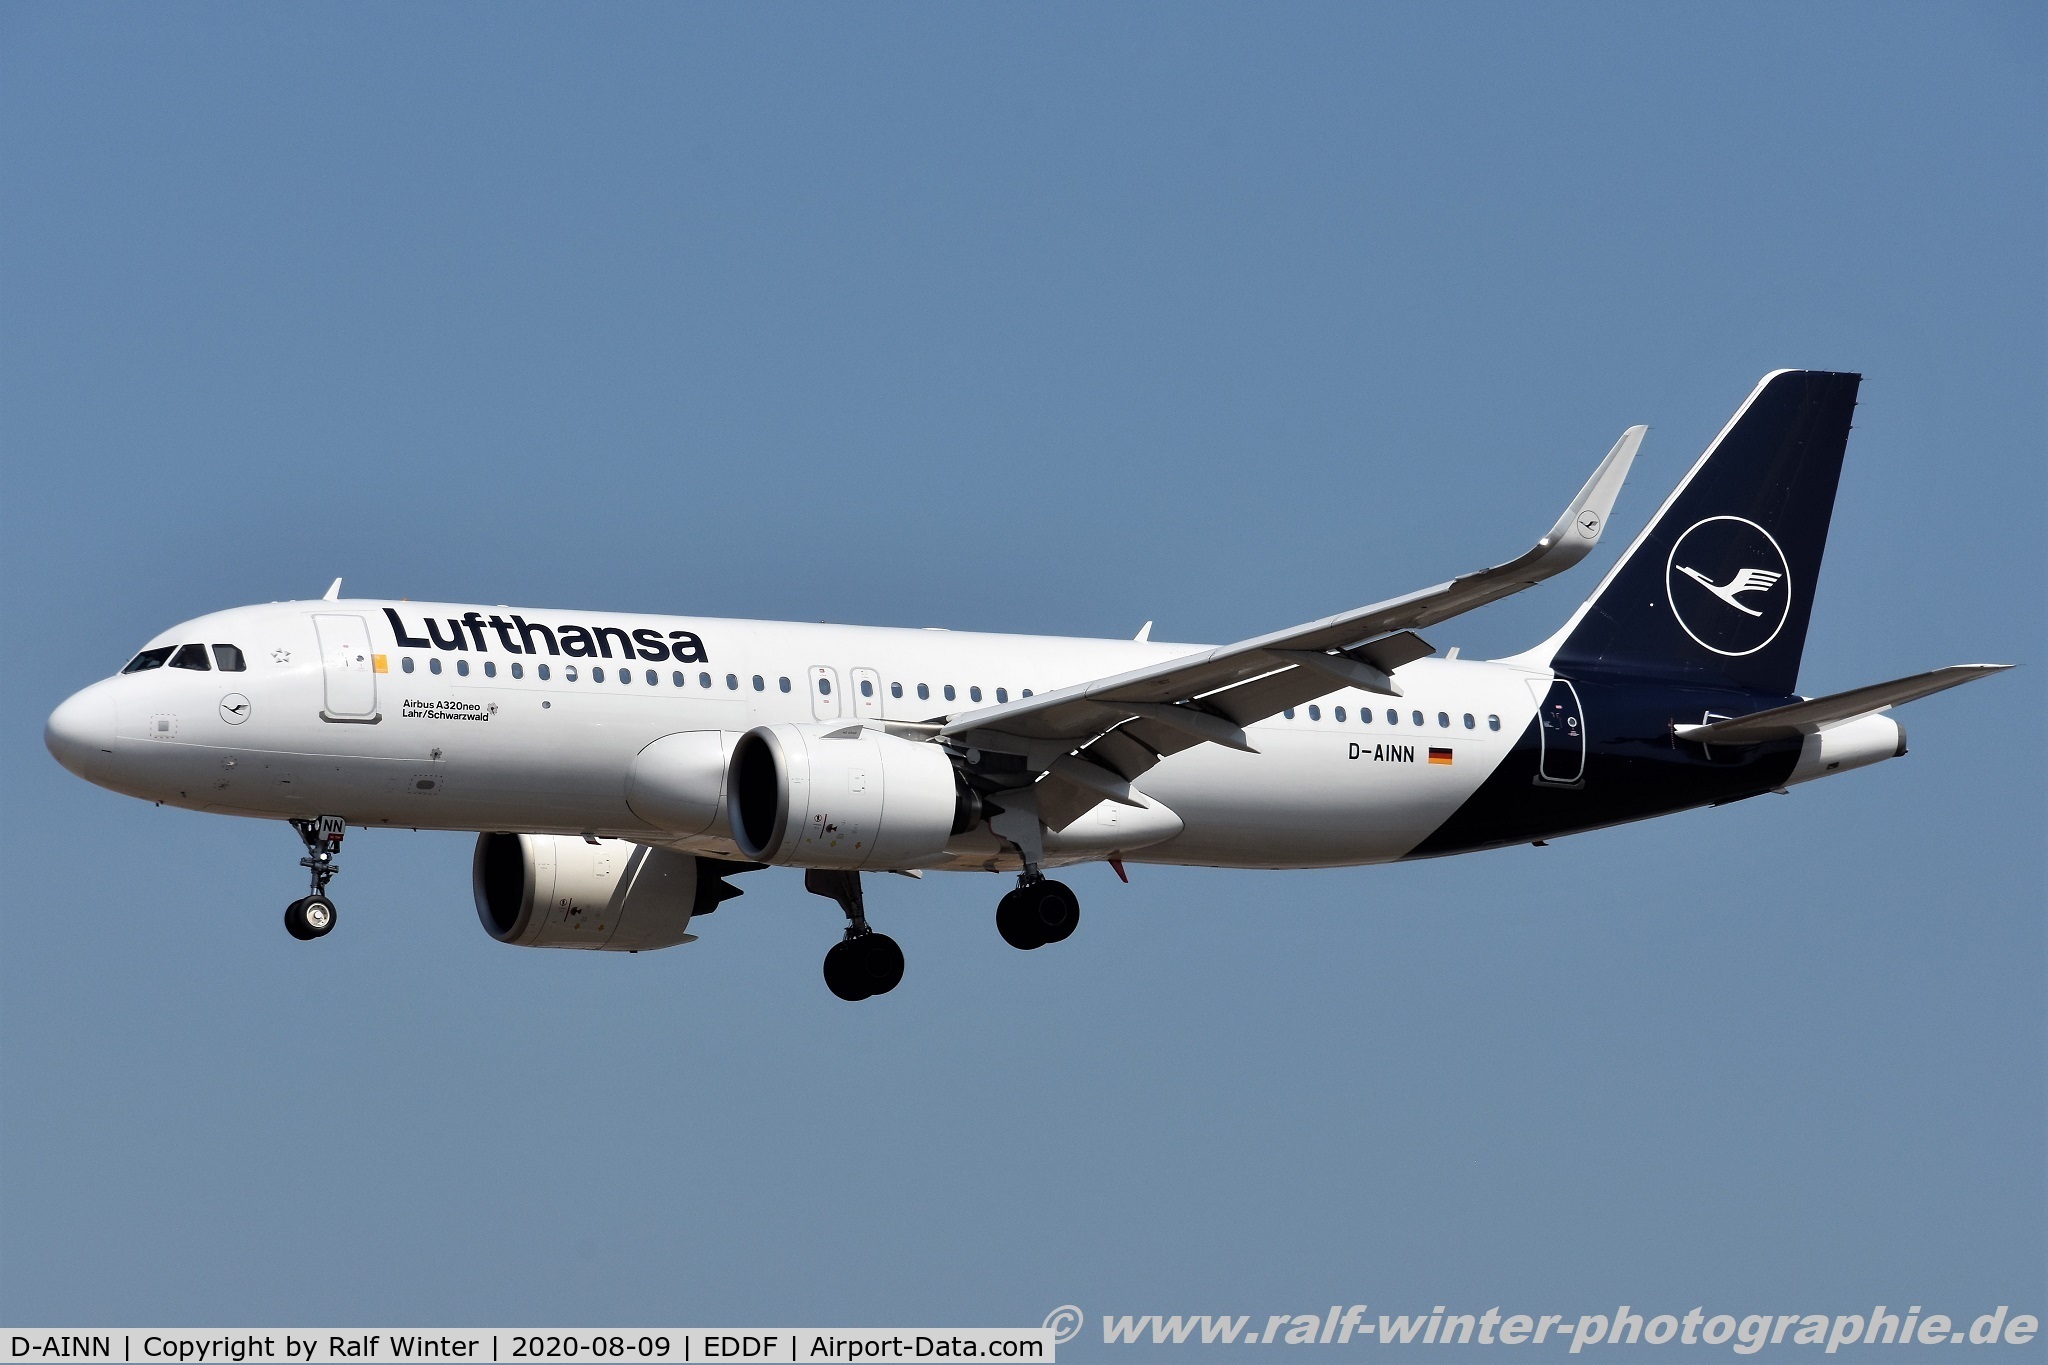 D-AINN, 2018 Airbus A320-271N C/N 8491, Airbus A320-271N - LH DLH Lufthansa 'Lahr-Schwarzwald' - 8491 - D-AINN - 09.08.2020 - FRA